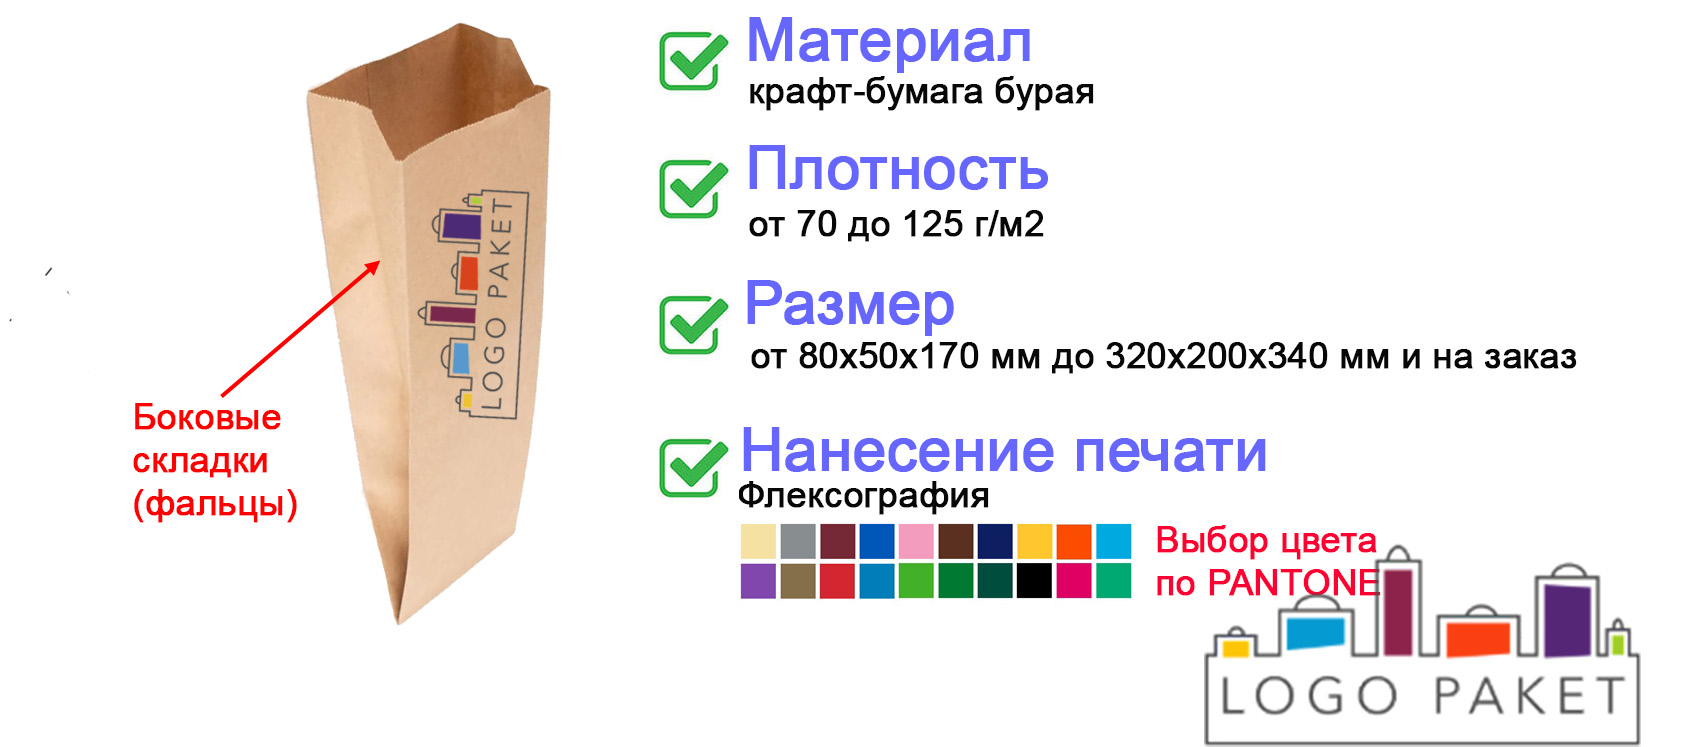 Бежевый крафт-пакет с фальцами инфографика